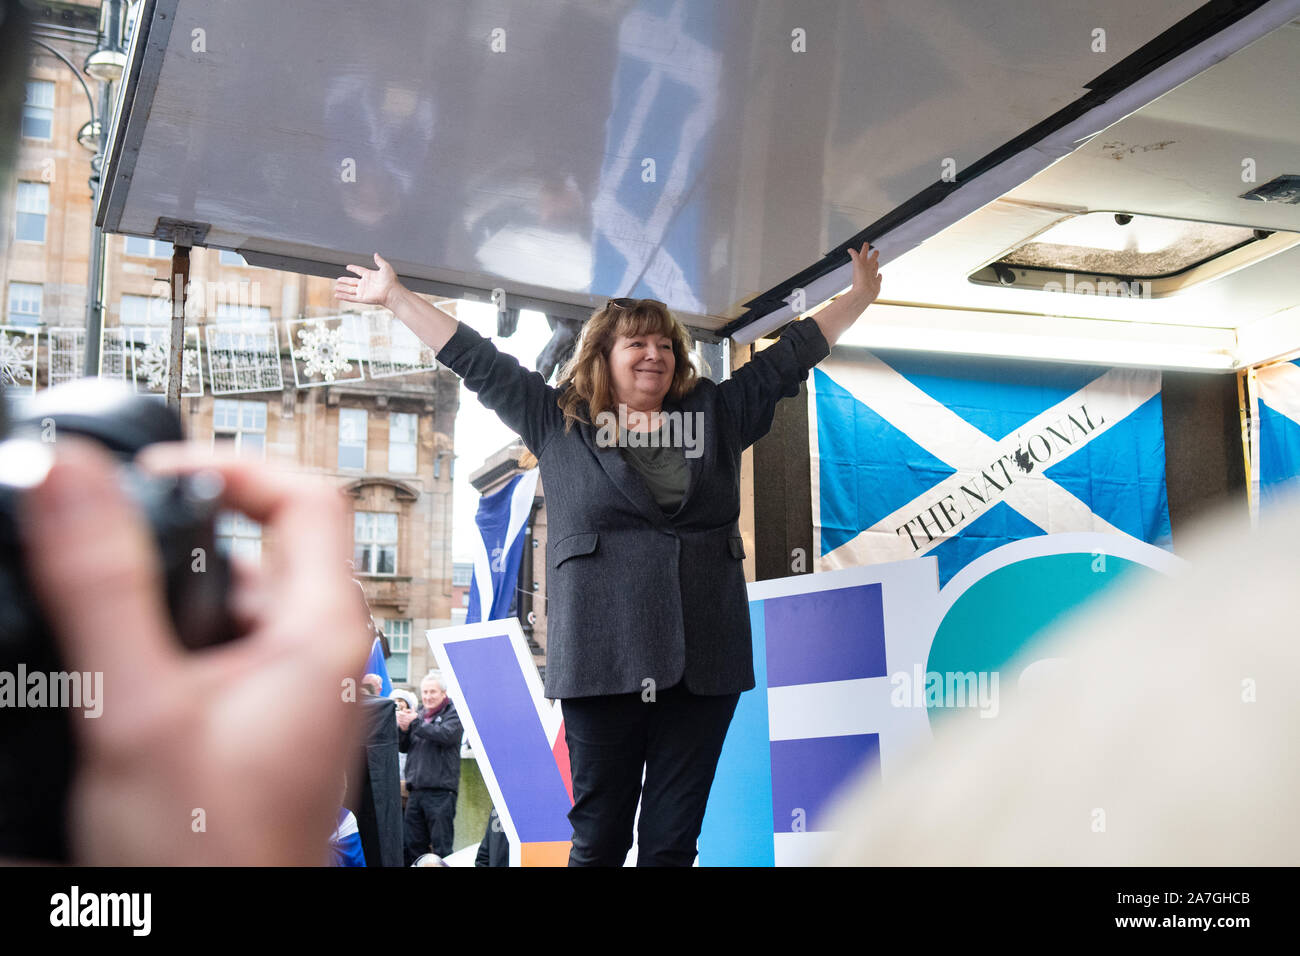 Janey Godley, comédien, dramaturge et auteur s'exprimant lors de l'indépendance (indyref2020, George Square, Glasgow, Écosse - 2 novembre 2019 Banque D'Images